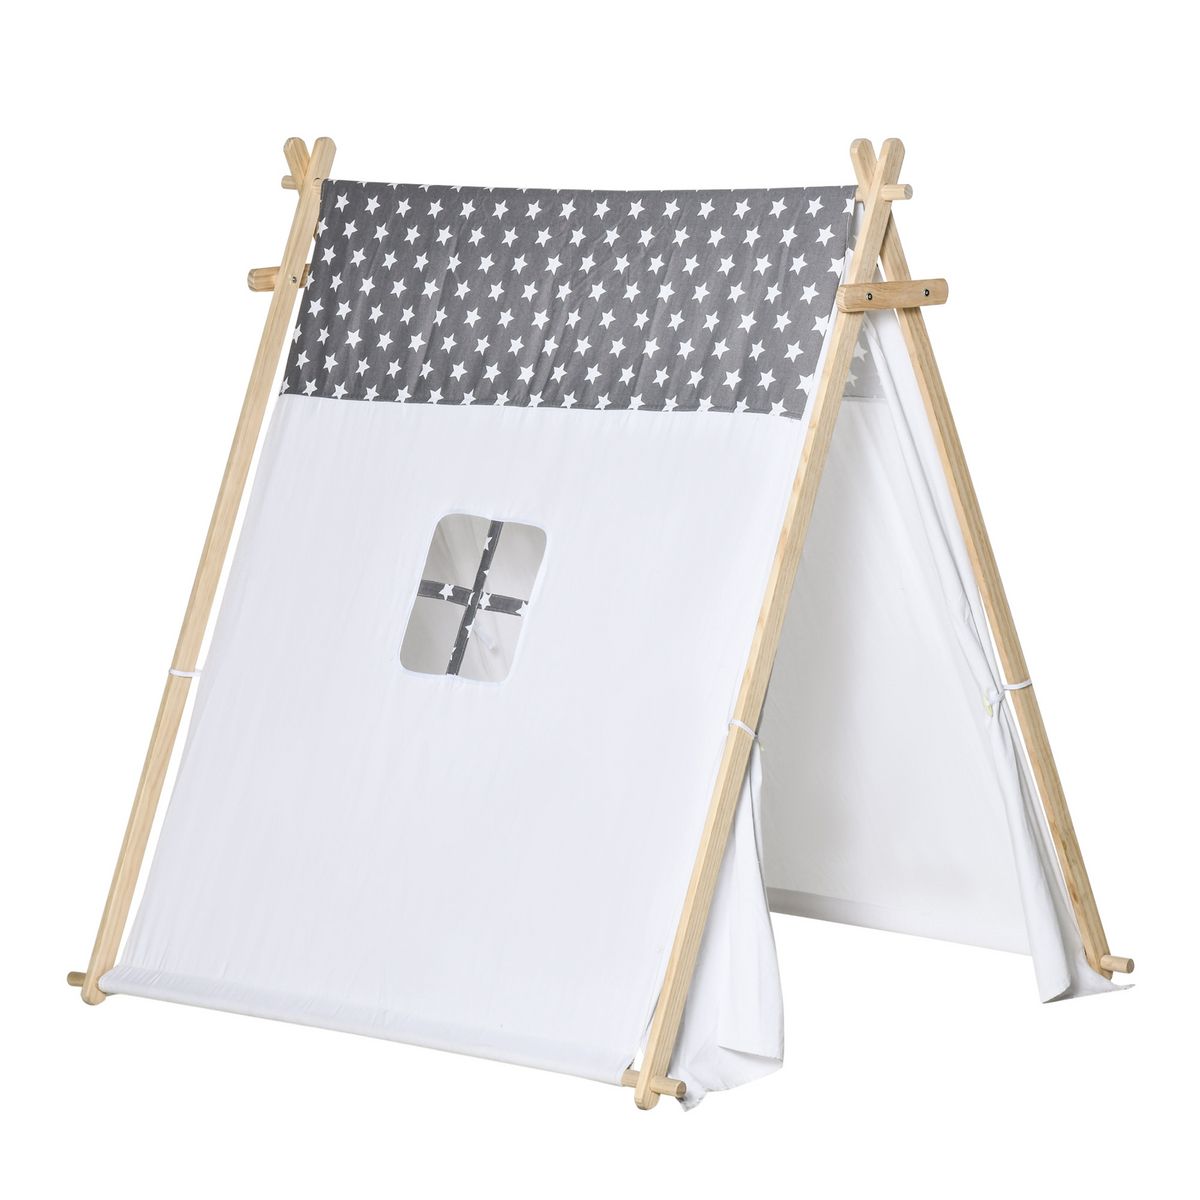 HOMCOM Tente teepee indien enfant motif étoiles - dim. 1,3L x 1,11I x 1,36H m - 2 portes refermables, fenêtre - structure bois, toile polyester coton gris blanc